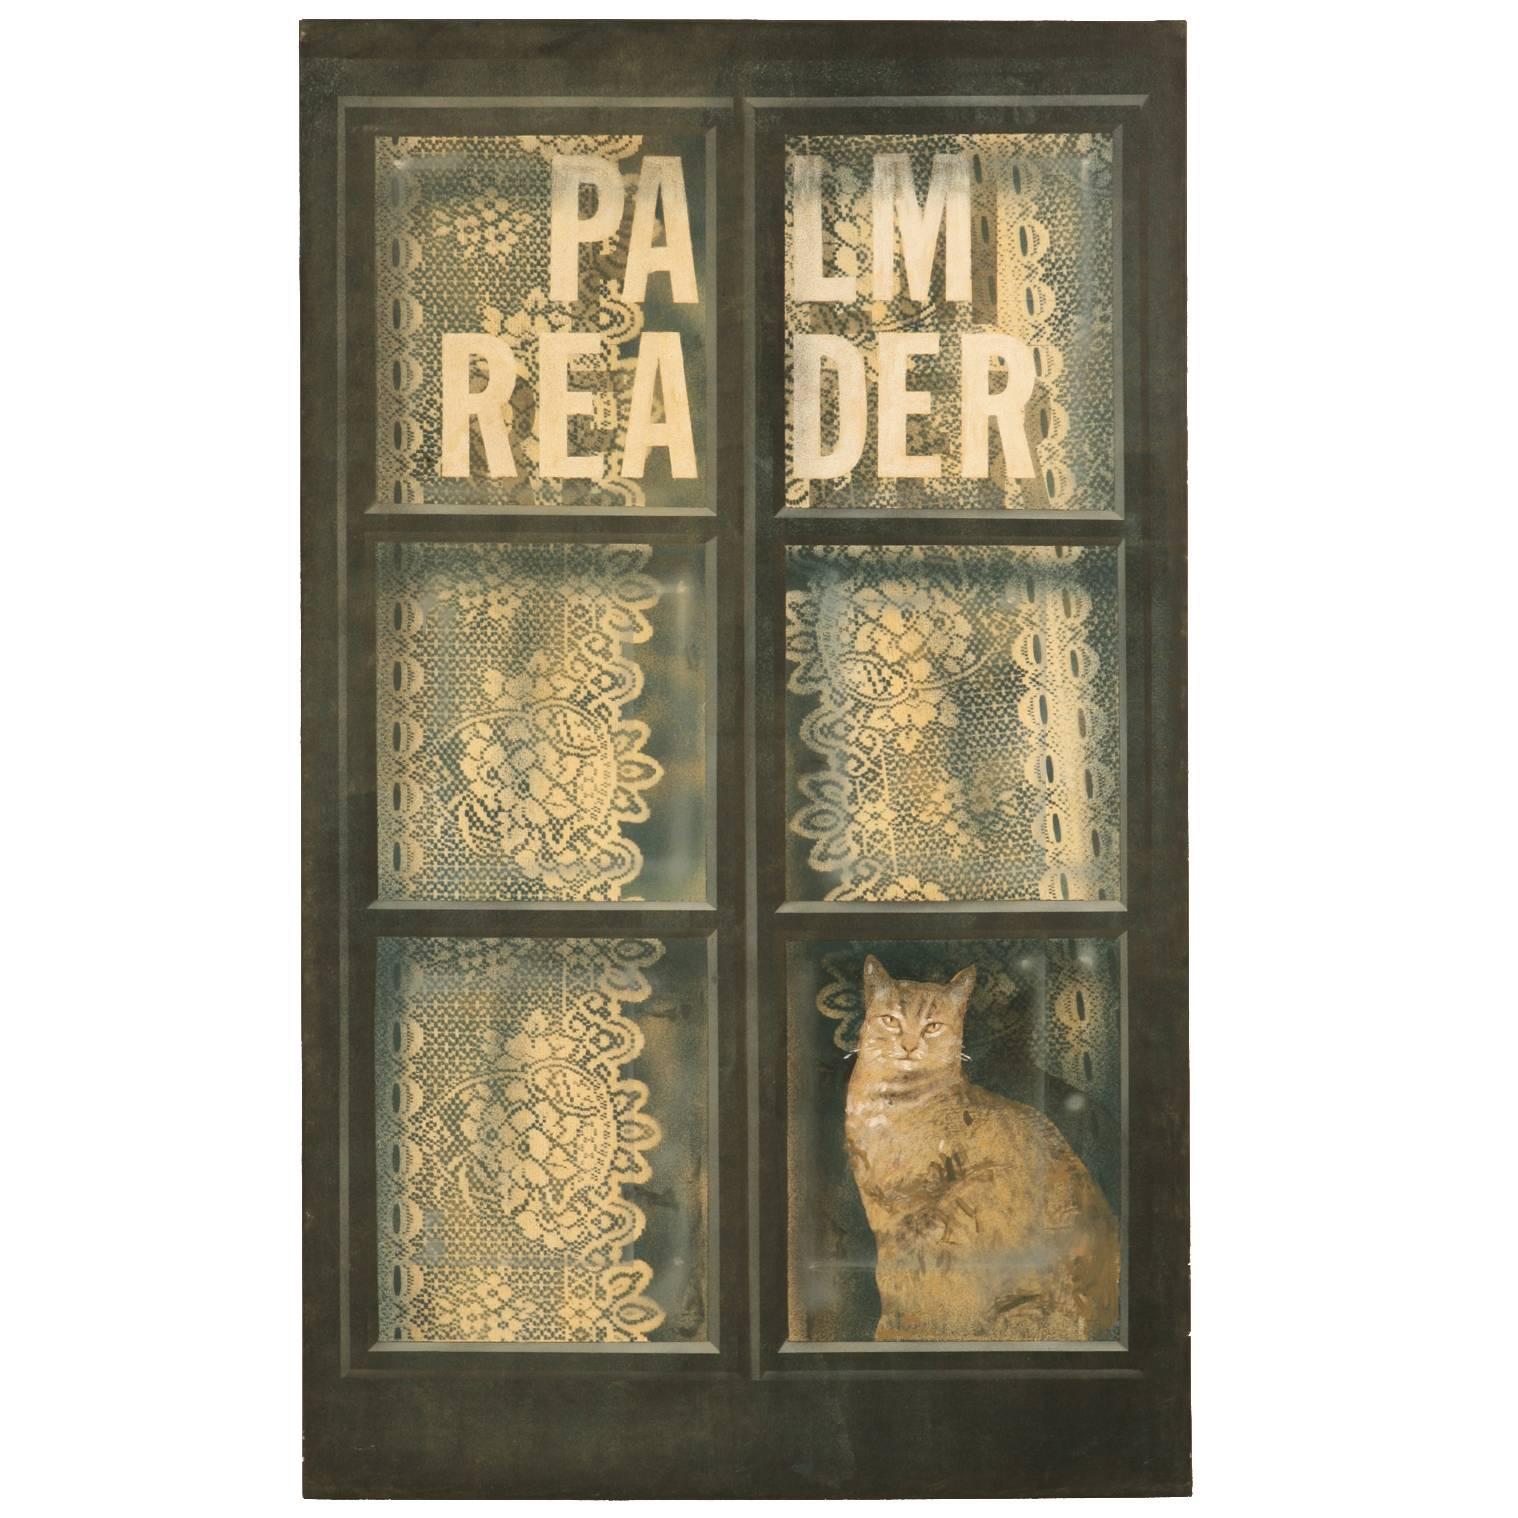 Cat in the Window by Zuleyka Benitez